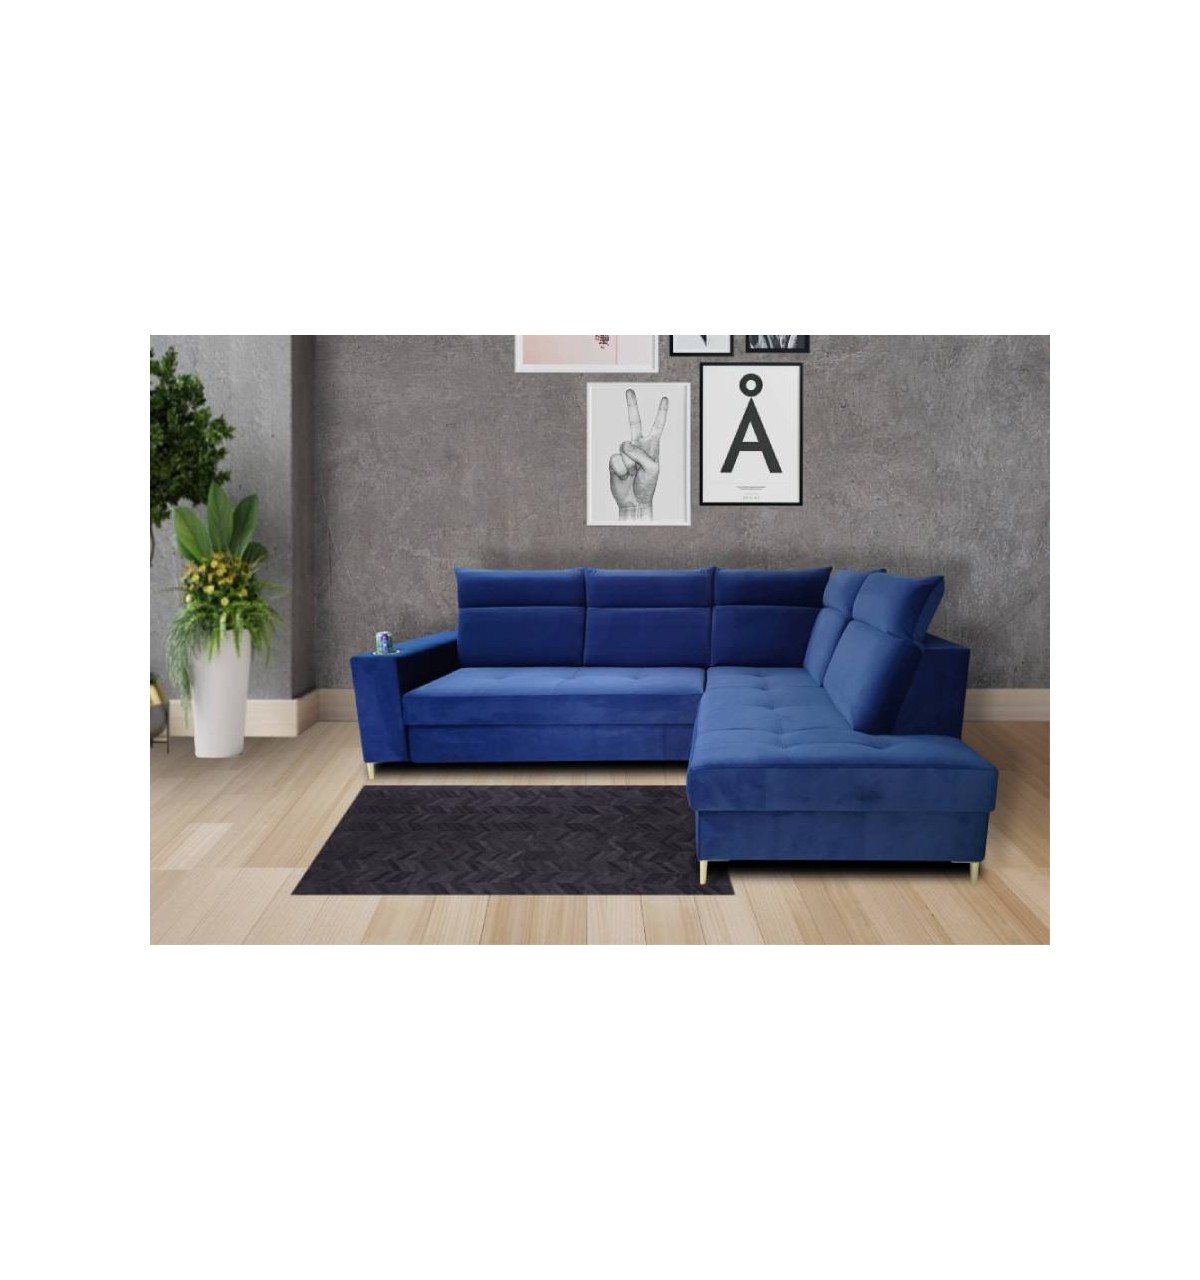 Niebieska sofa narożna z funkcją spania